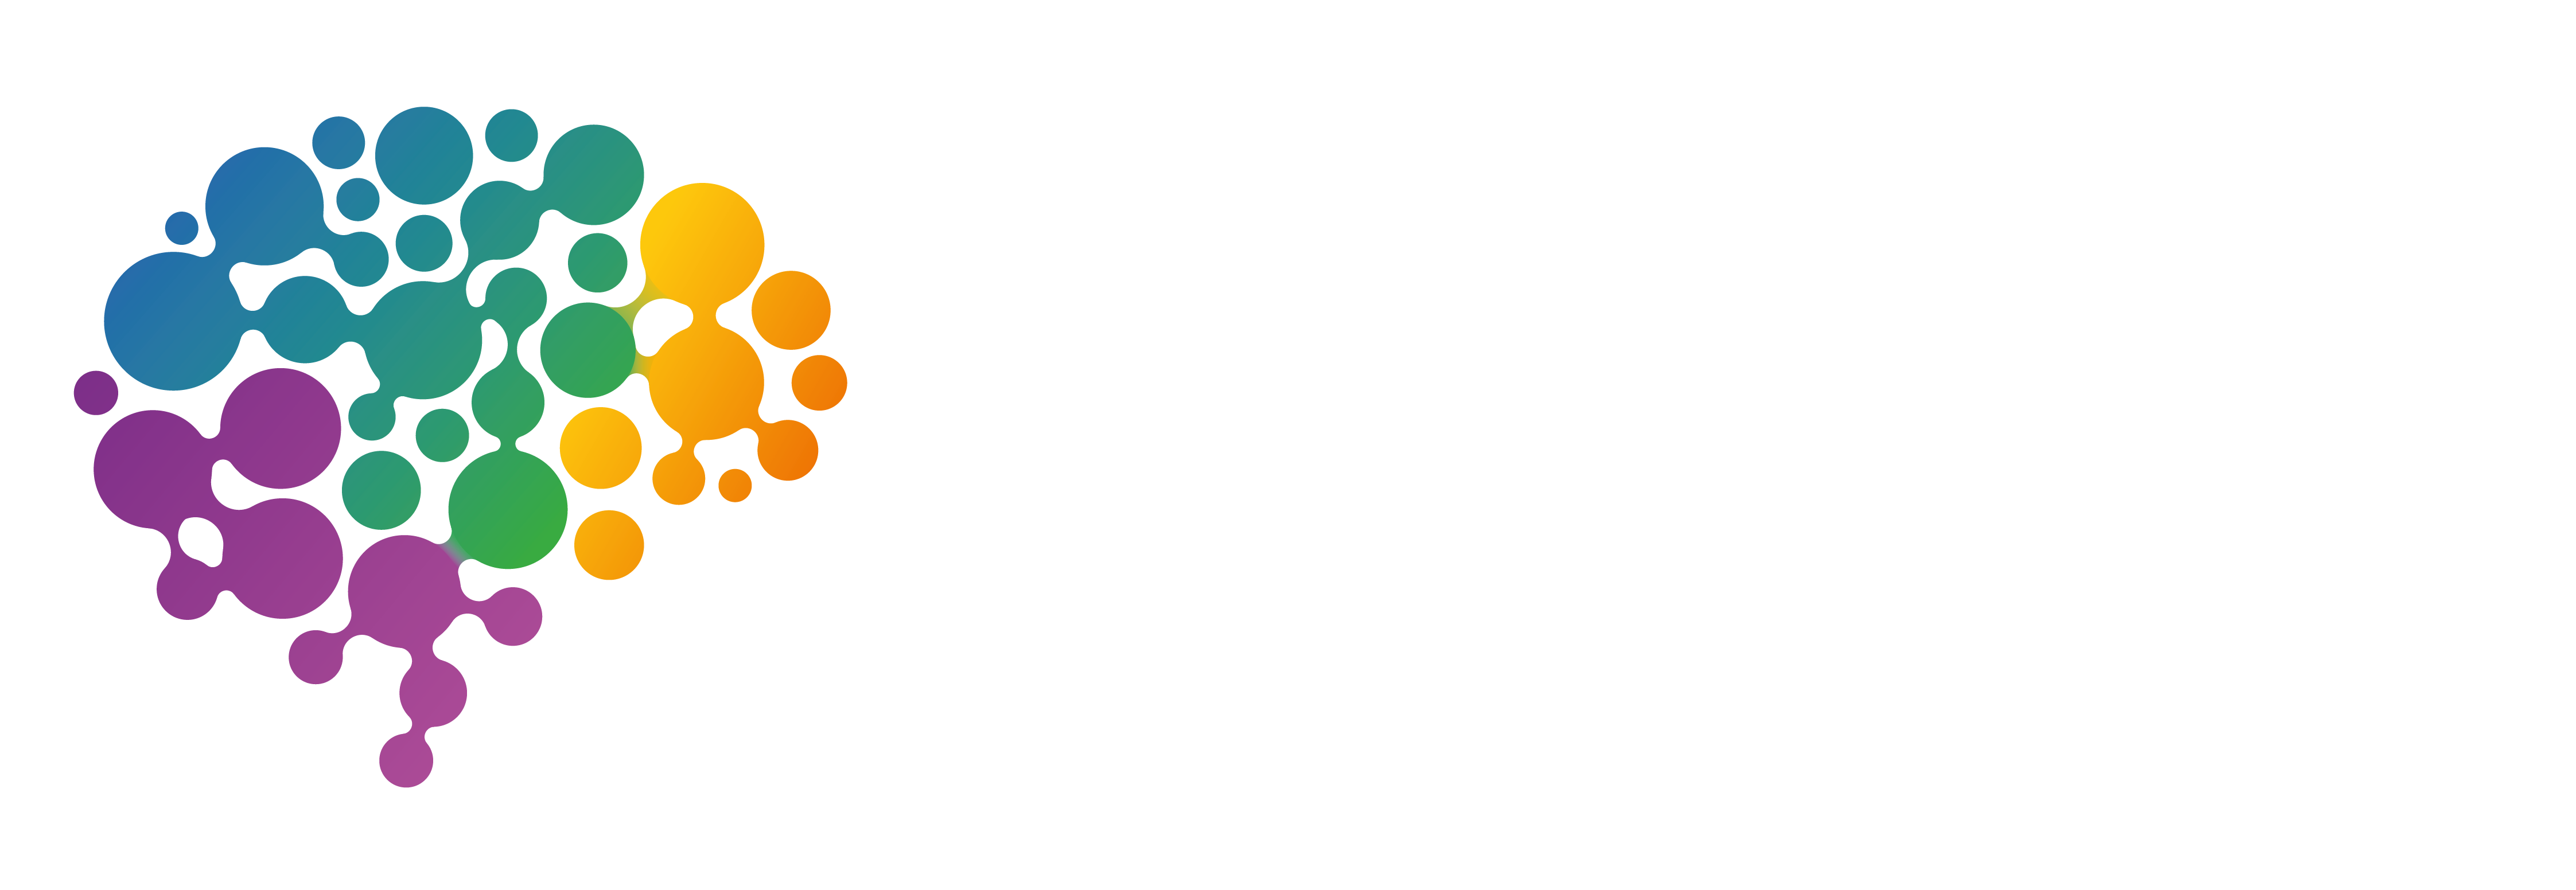 Naturaleza Humana